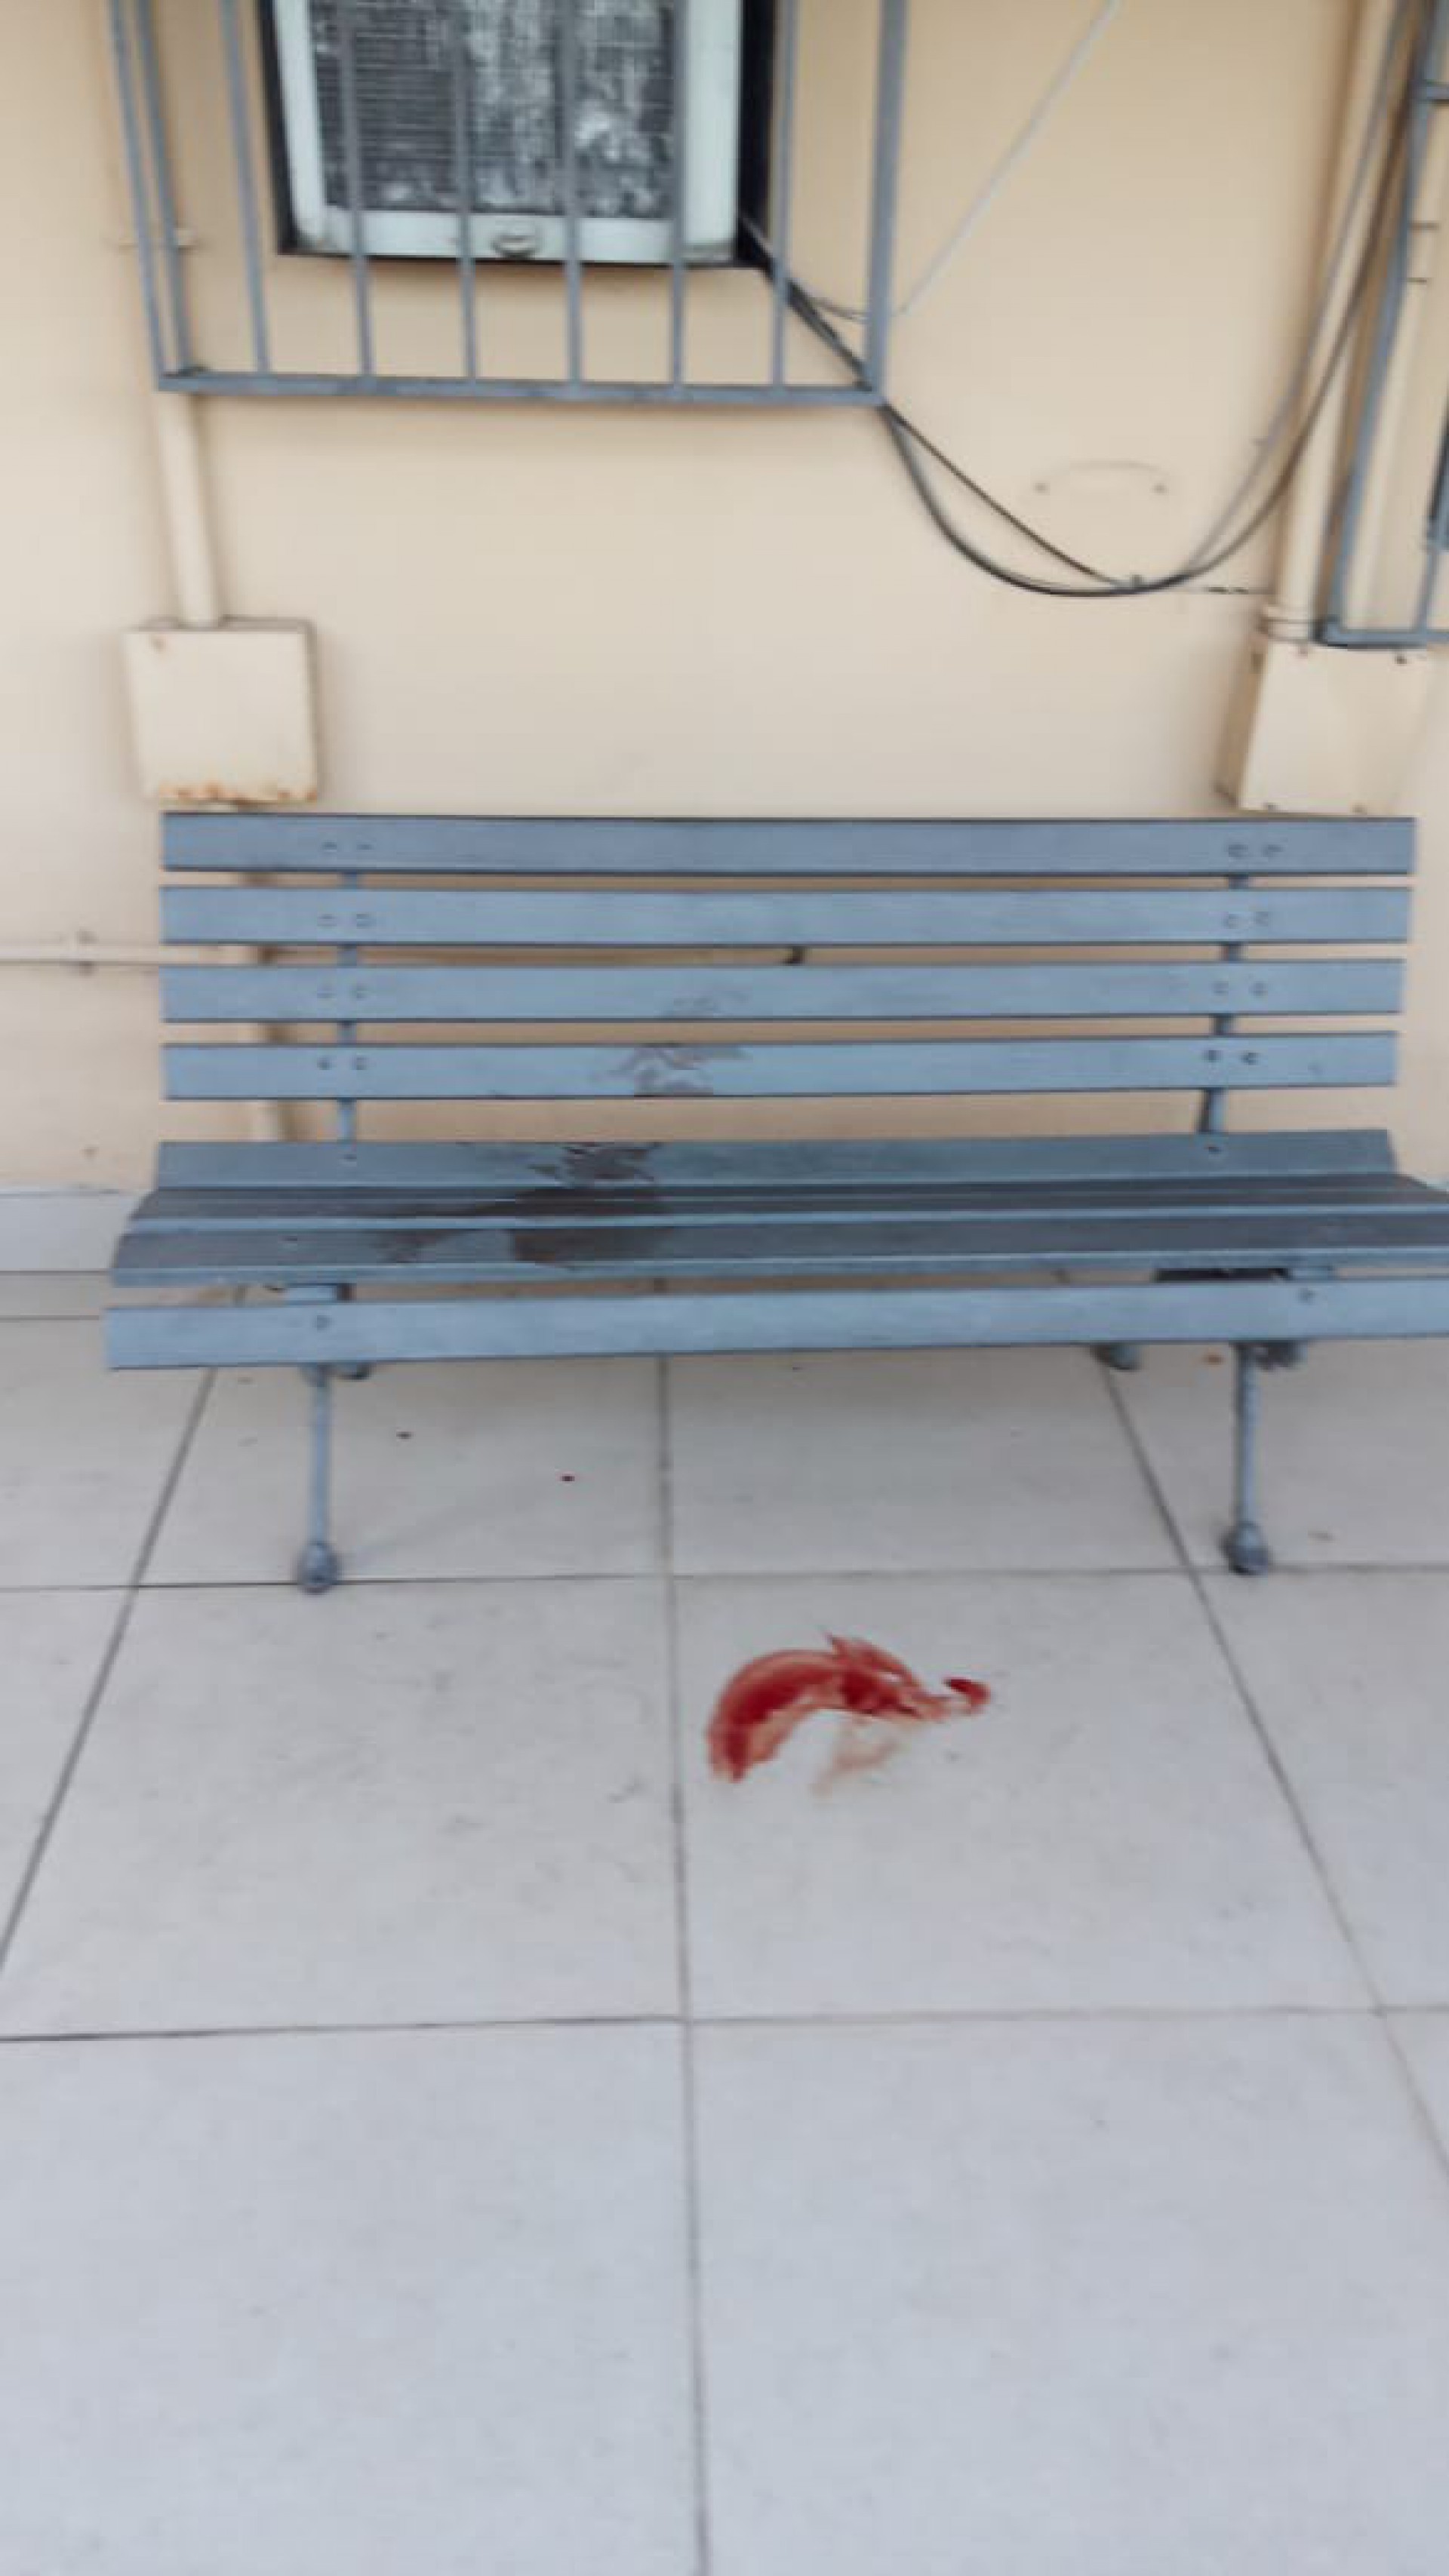 Manchas de sangue deixadas por um dos suspeitos no pátio do prédio - Divulgação